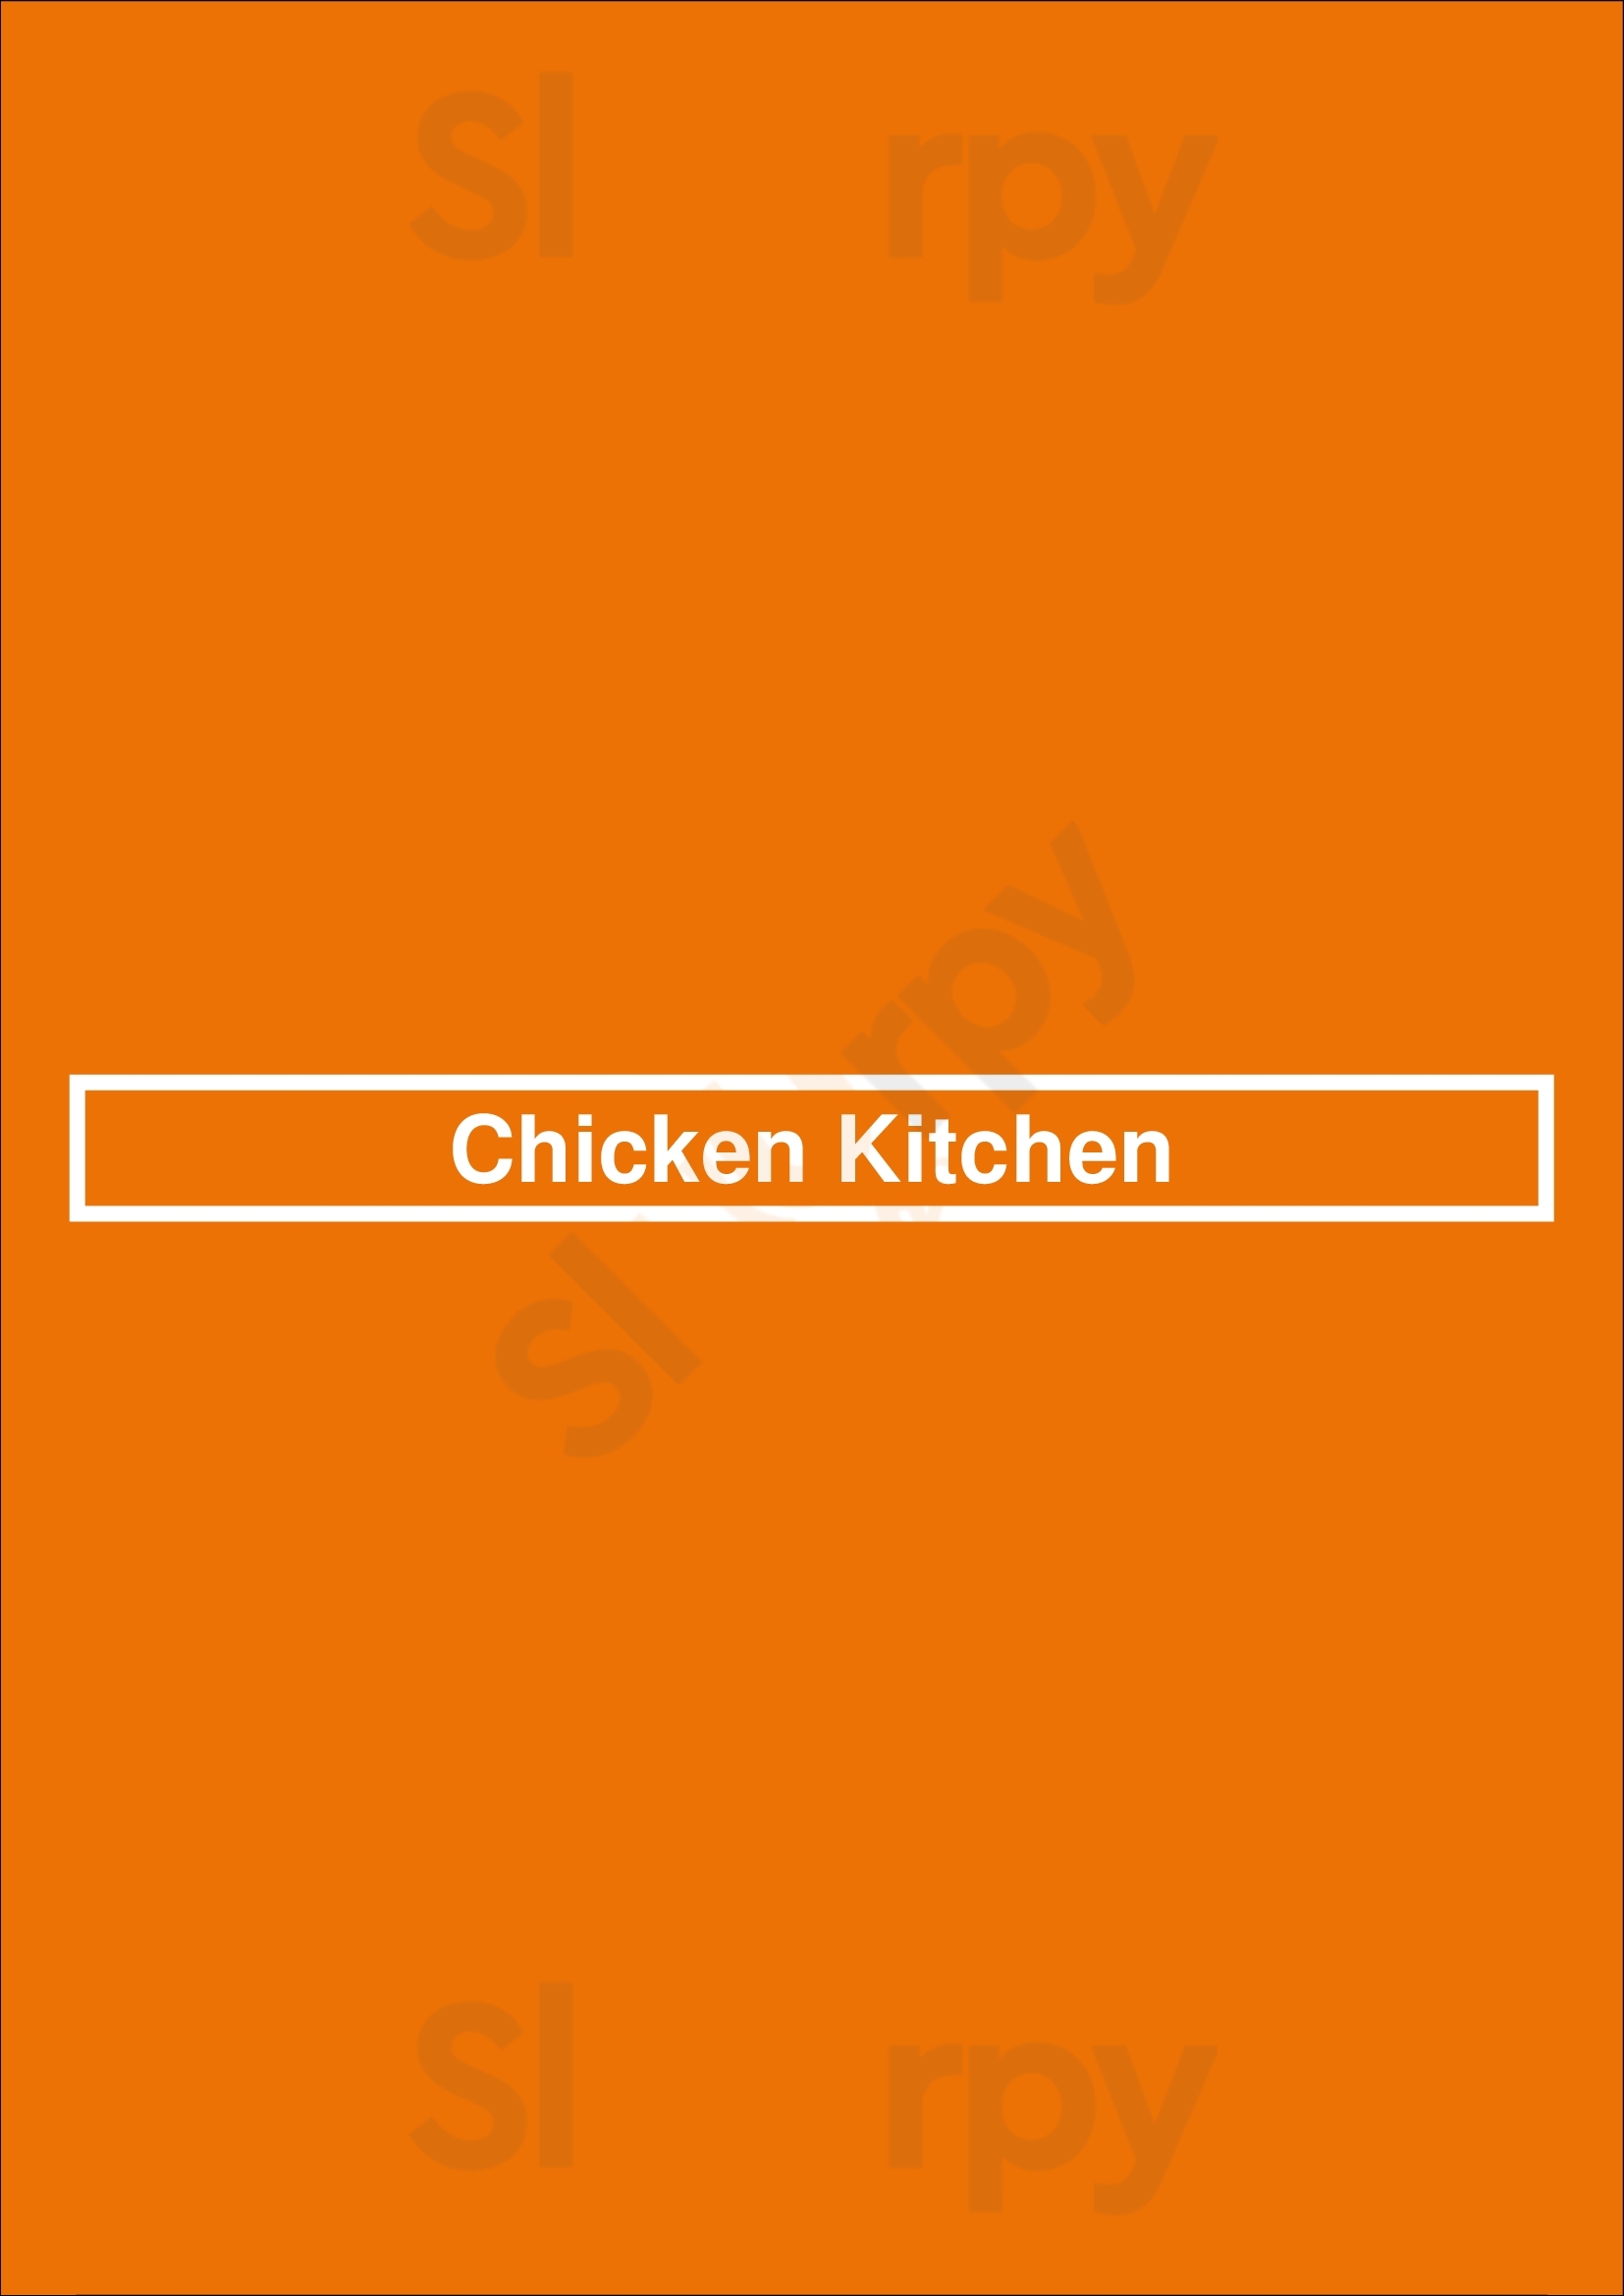 Chicken Kitchen Miami Menu - 1